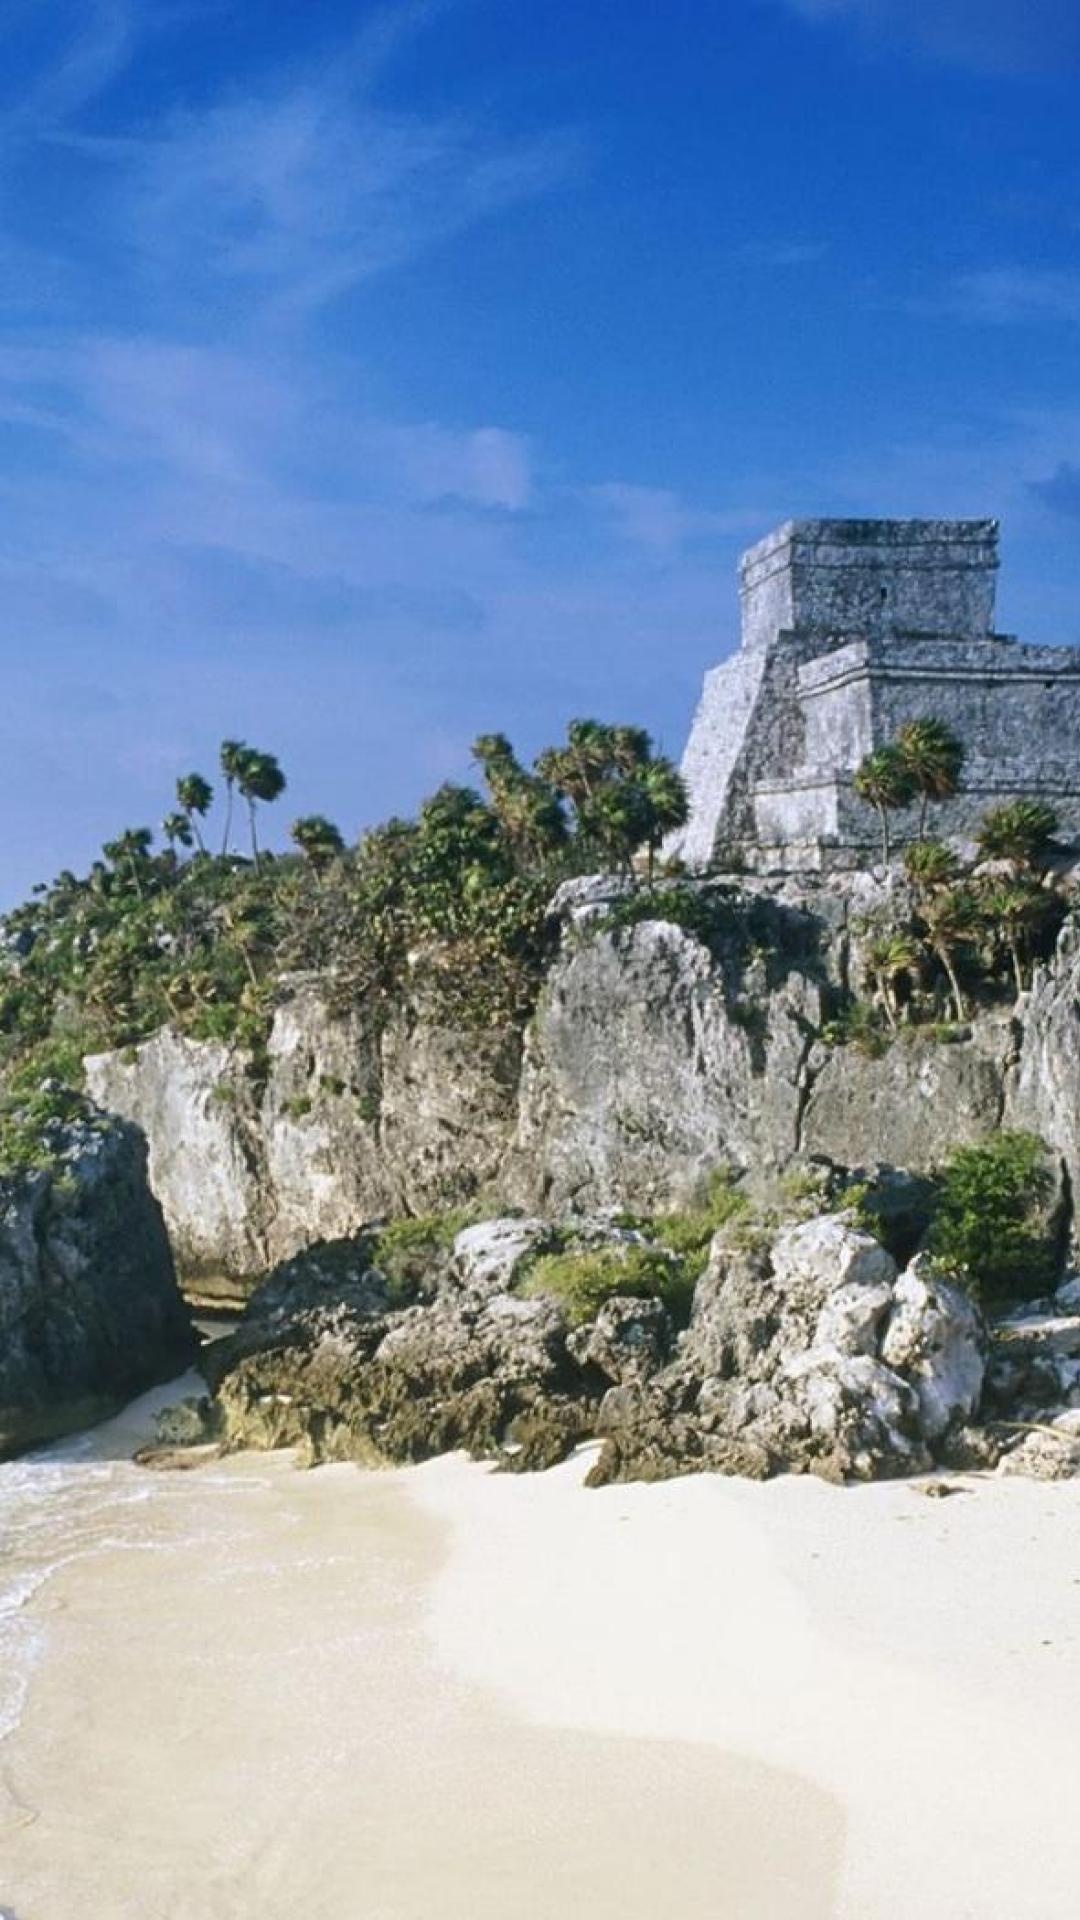 Maya ruins wallpaper, History's legacy, Ancient civilizations, Cultural relics, 1080x1920 Full HD Phone